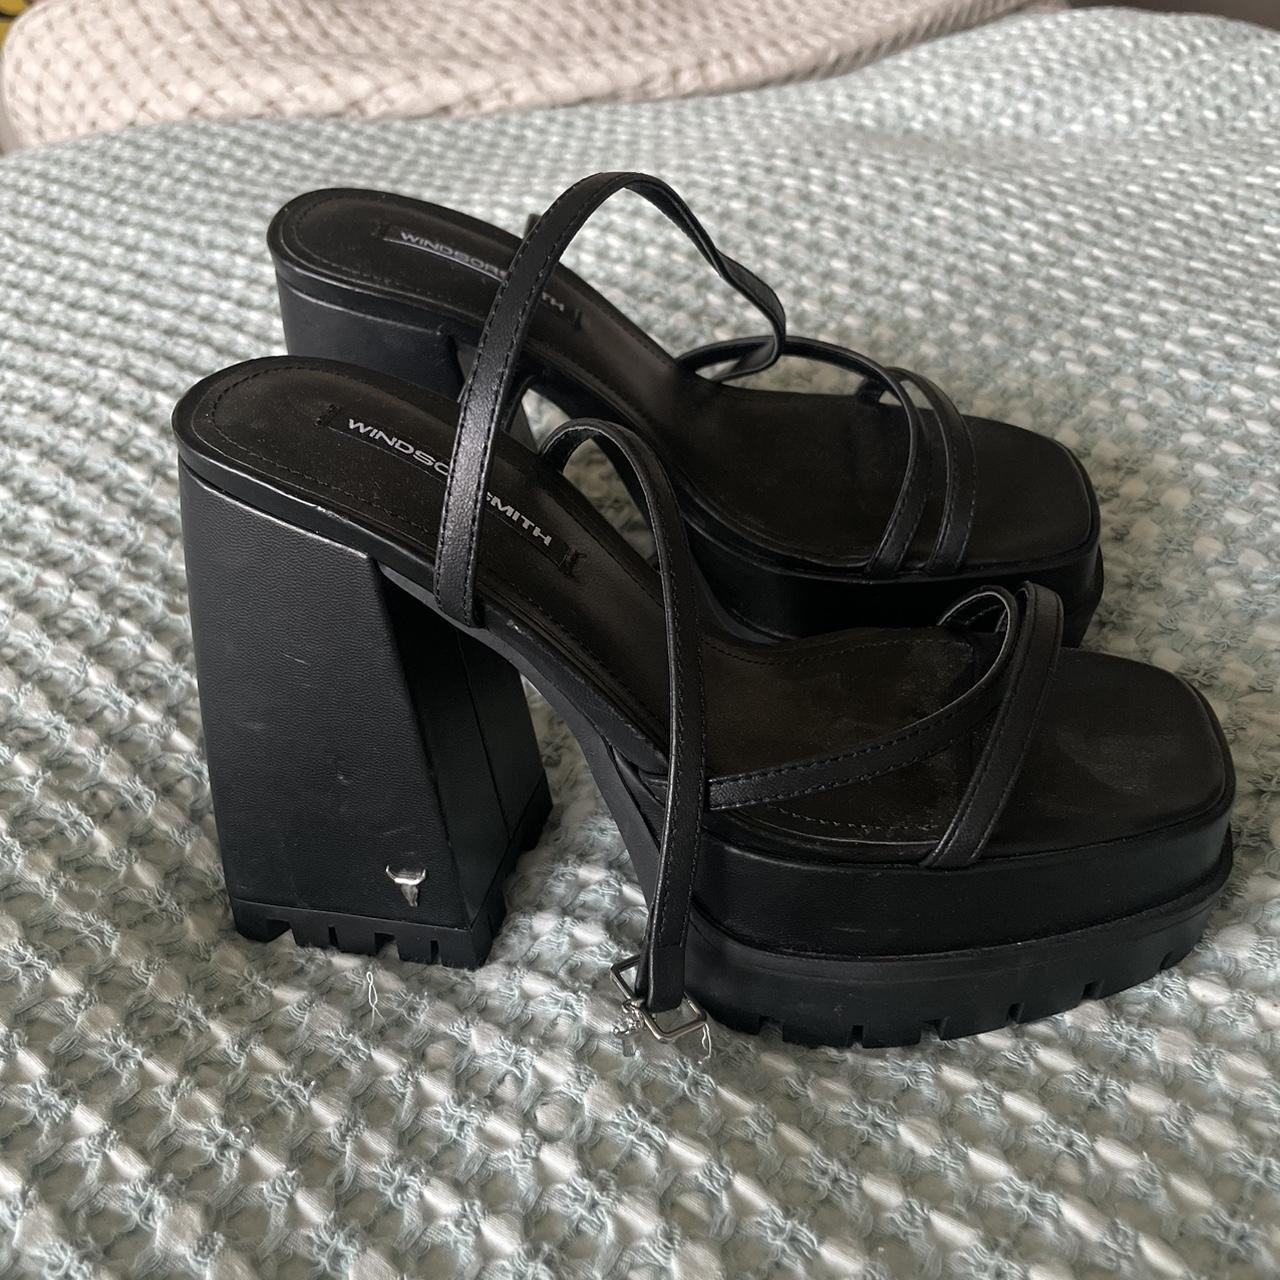 Windsor Smith platform strappy heels - Depop